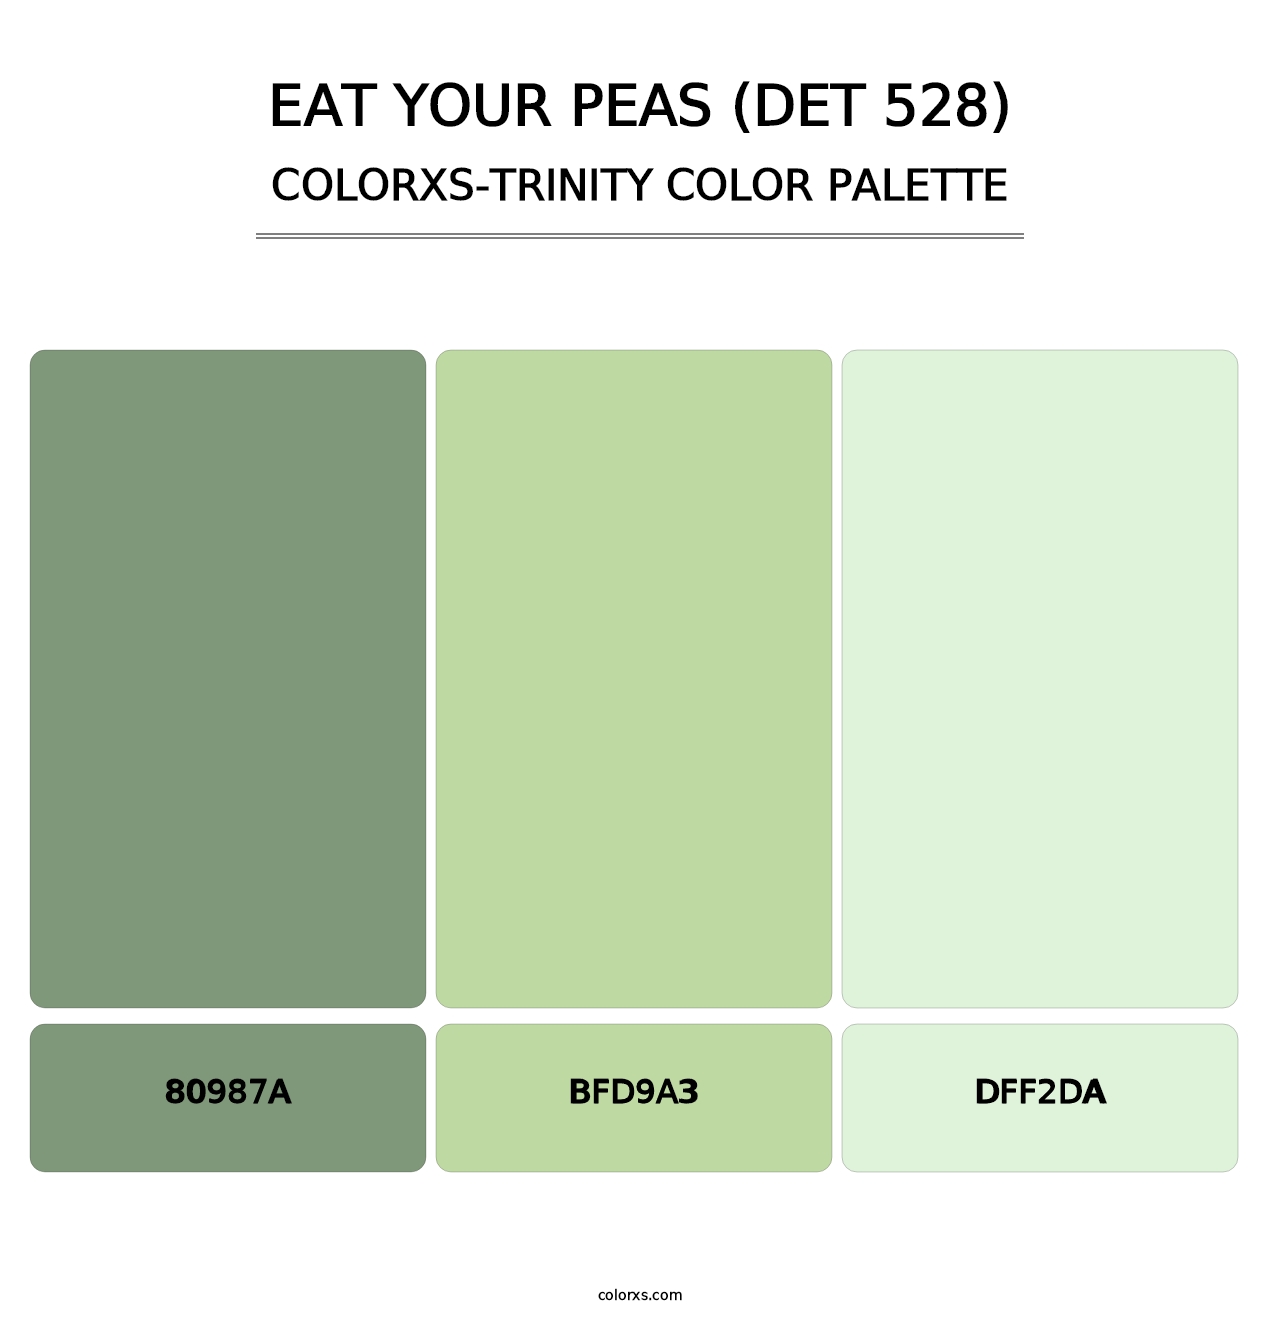 Eat Your Peas (DET 528) - Colorxs Trinity Palette